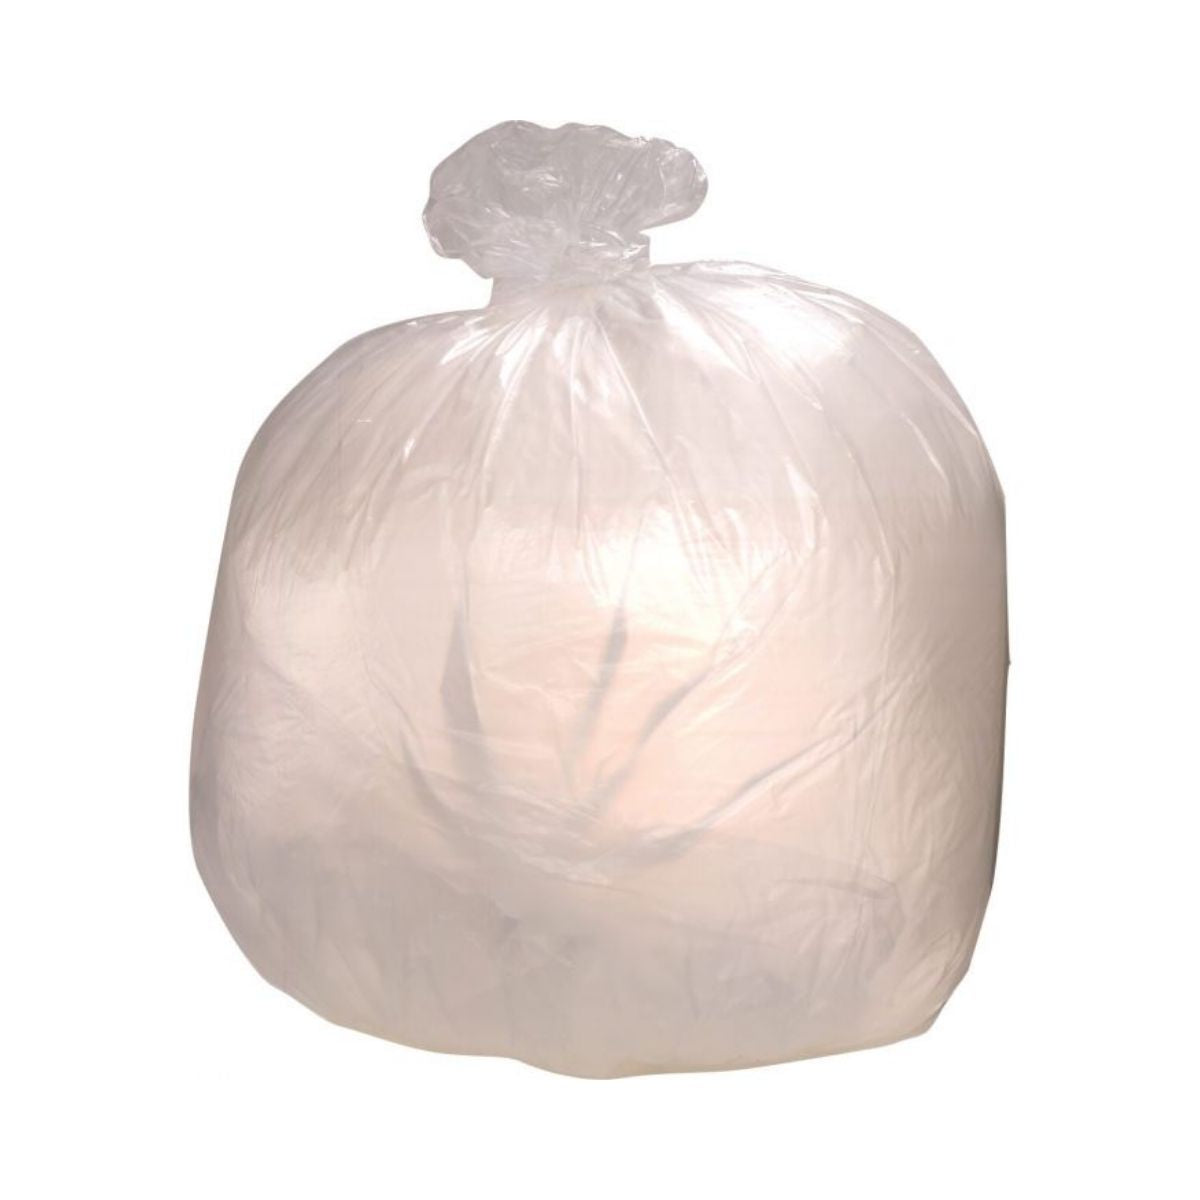 24 x 33 Clear Trash Bags (1000 Bags) (6 Micron)